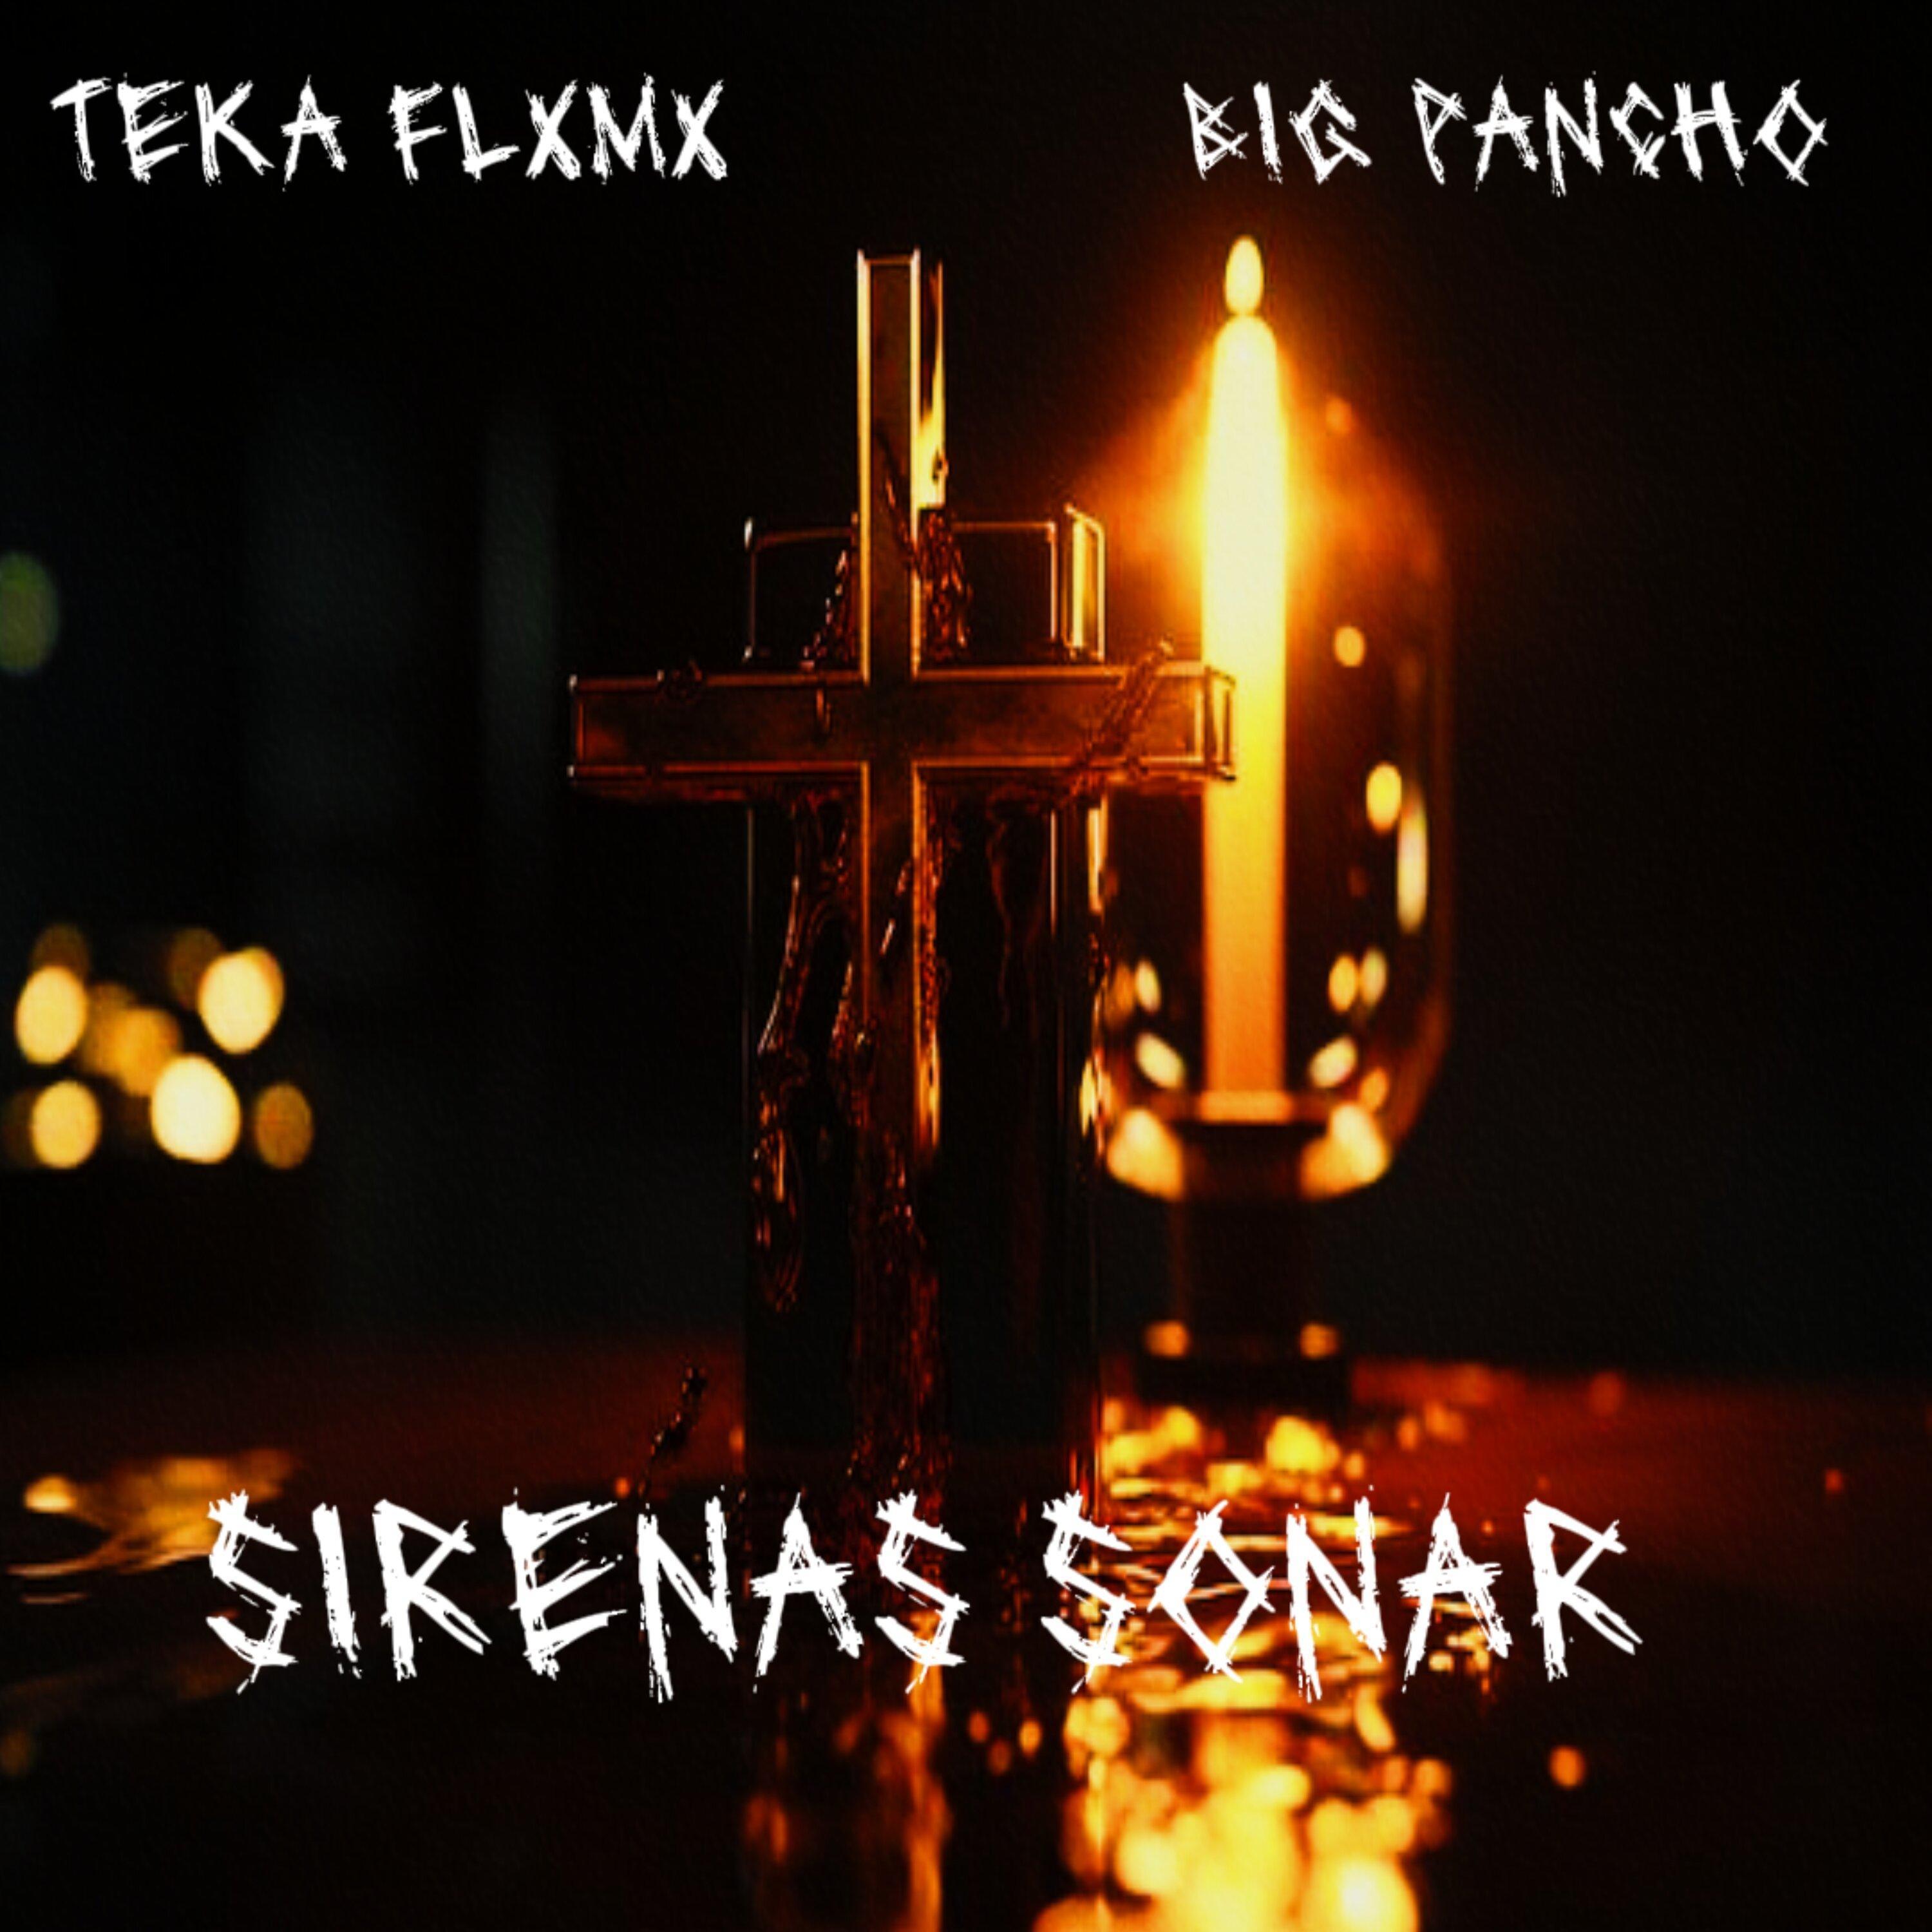 Flaming Hot Mx Gang - Sirenas Sonar (feat. Big Pancho, Teka Flxmx & George)